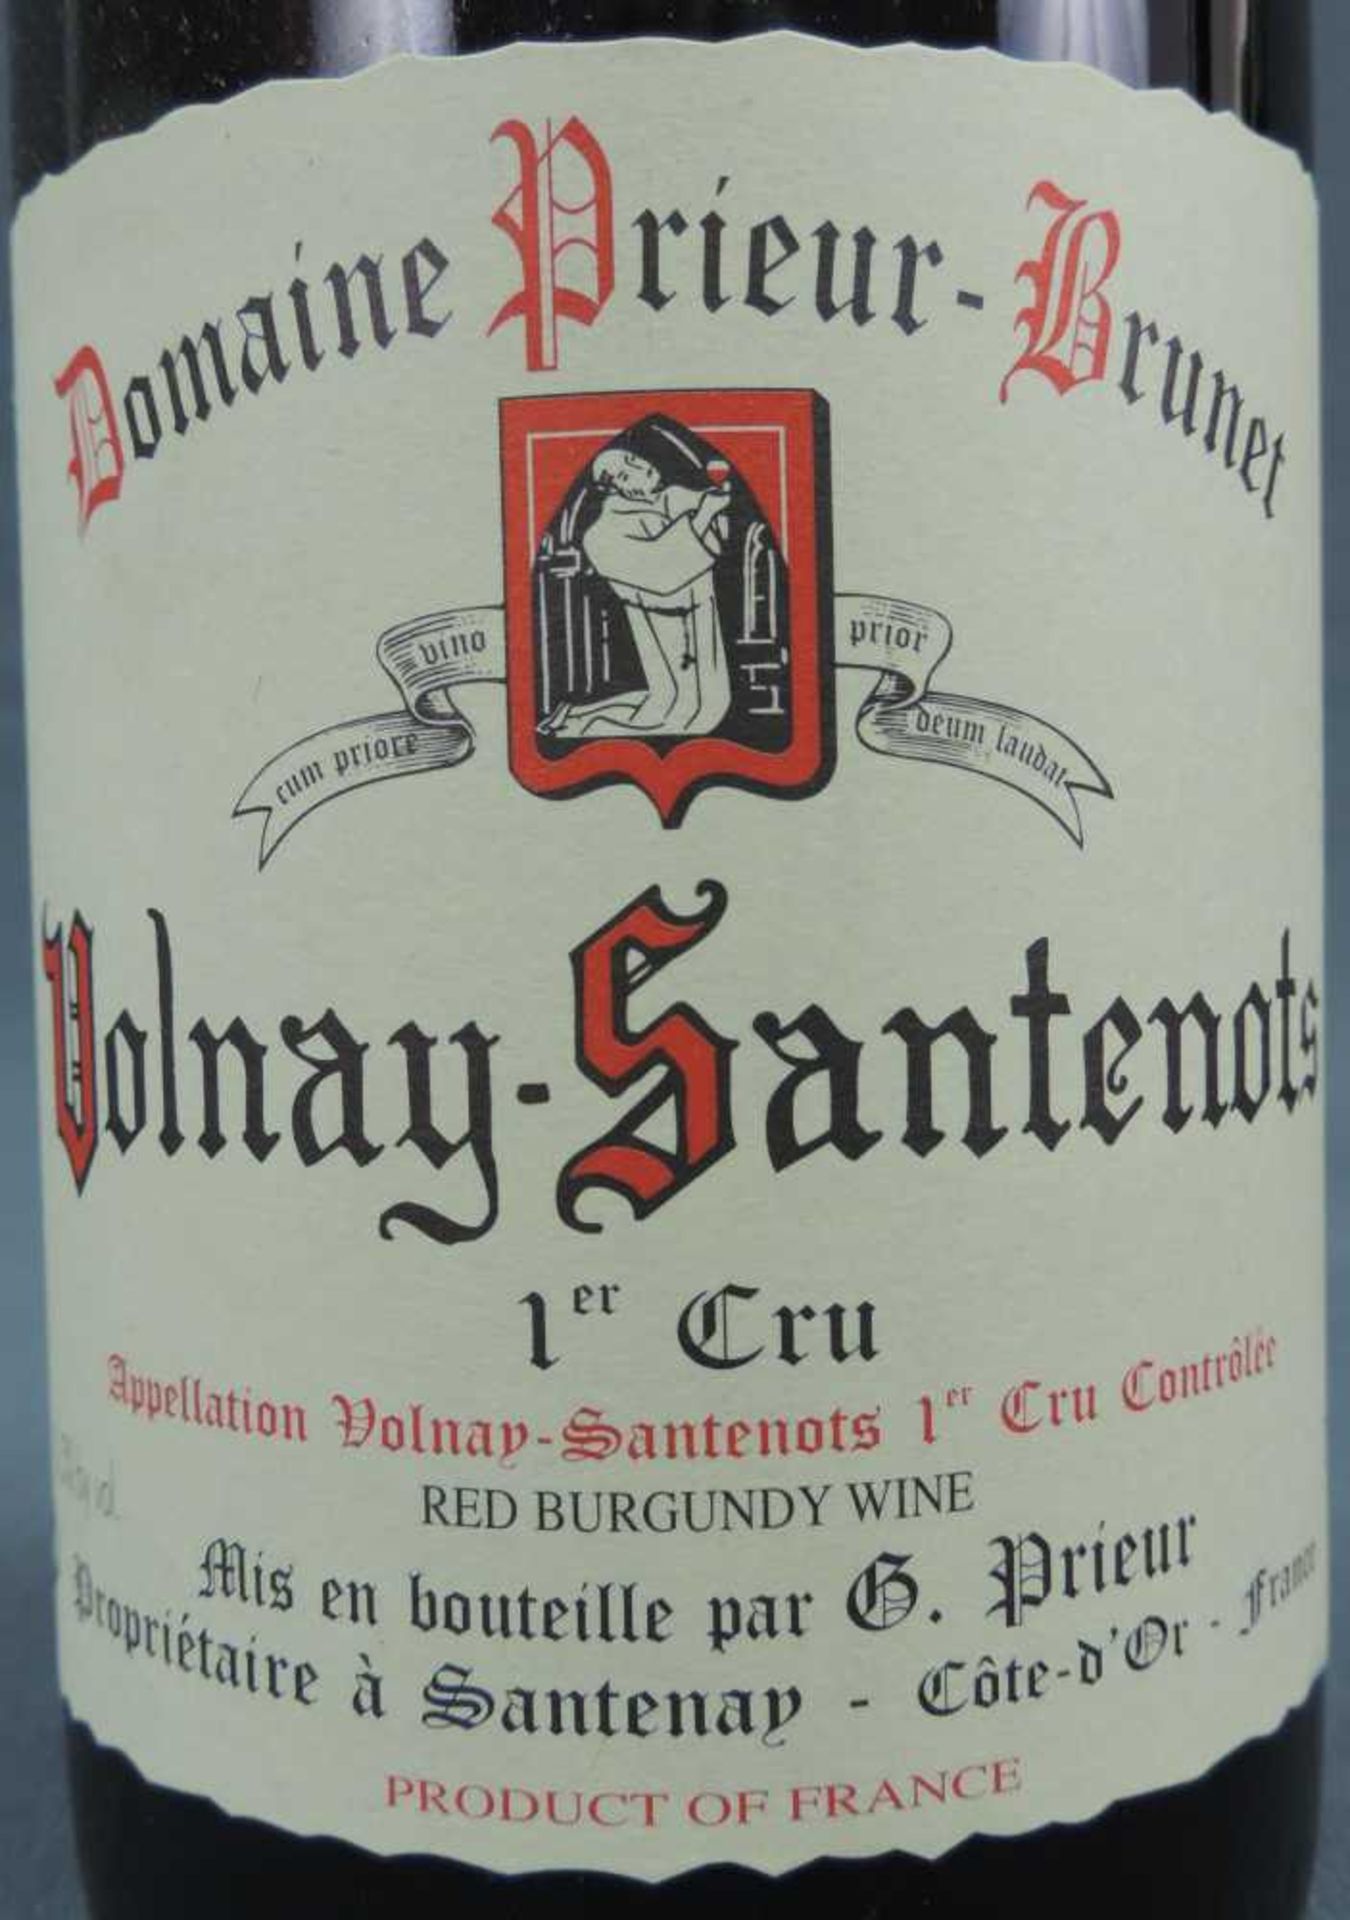 1997 Domaine Prieur - Brunet, Volnay Santenots Premier Cru, France. 5 Flaschen, 750 ml, Alc., 13, - Image 4 of 6